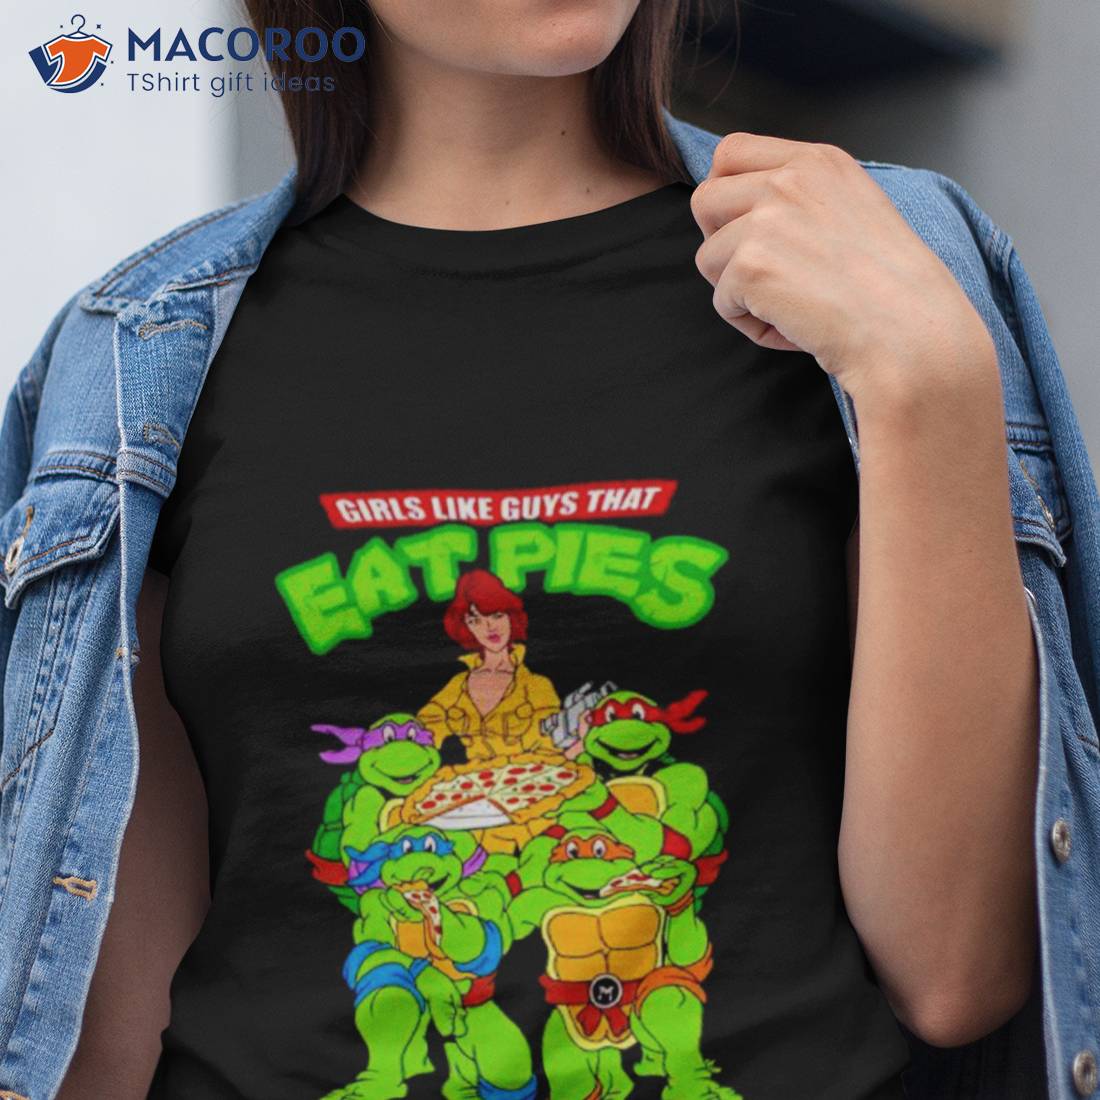 https://images.macoroo.com/wp-content/uploads/2023/06/ninja-turtles-girls-like-guys-that-eat-pies-shirt-tshirt.jpg